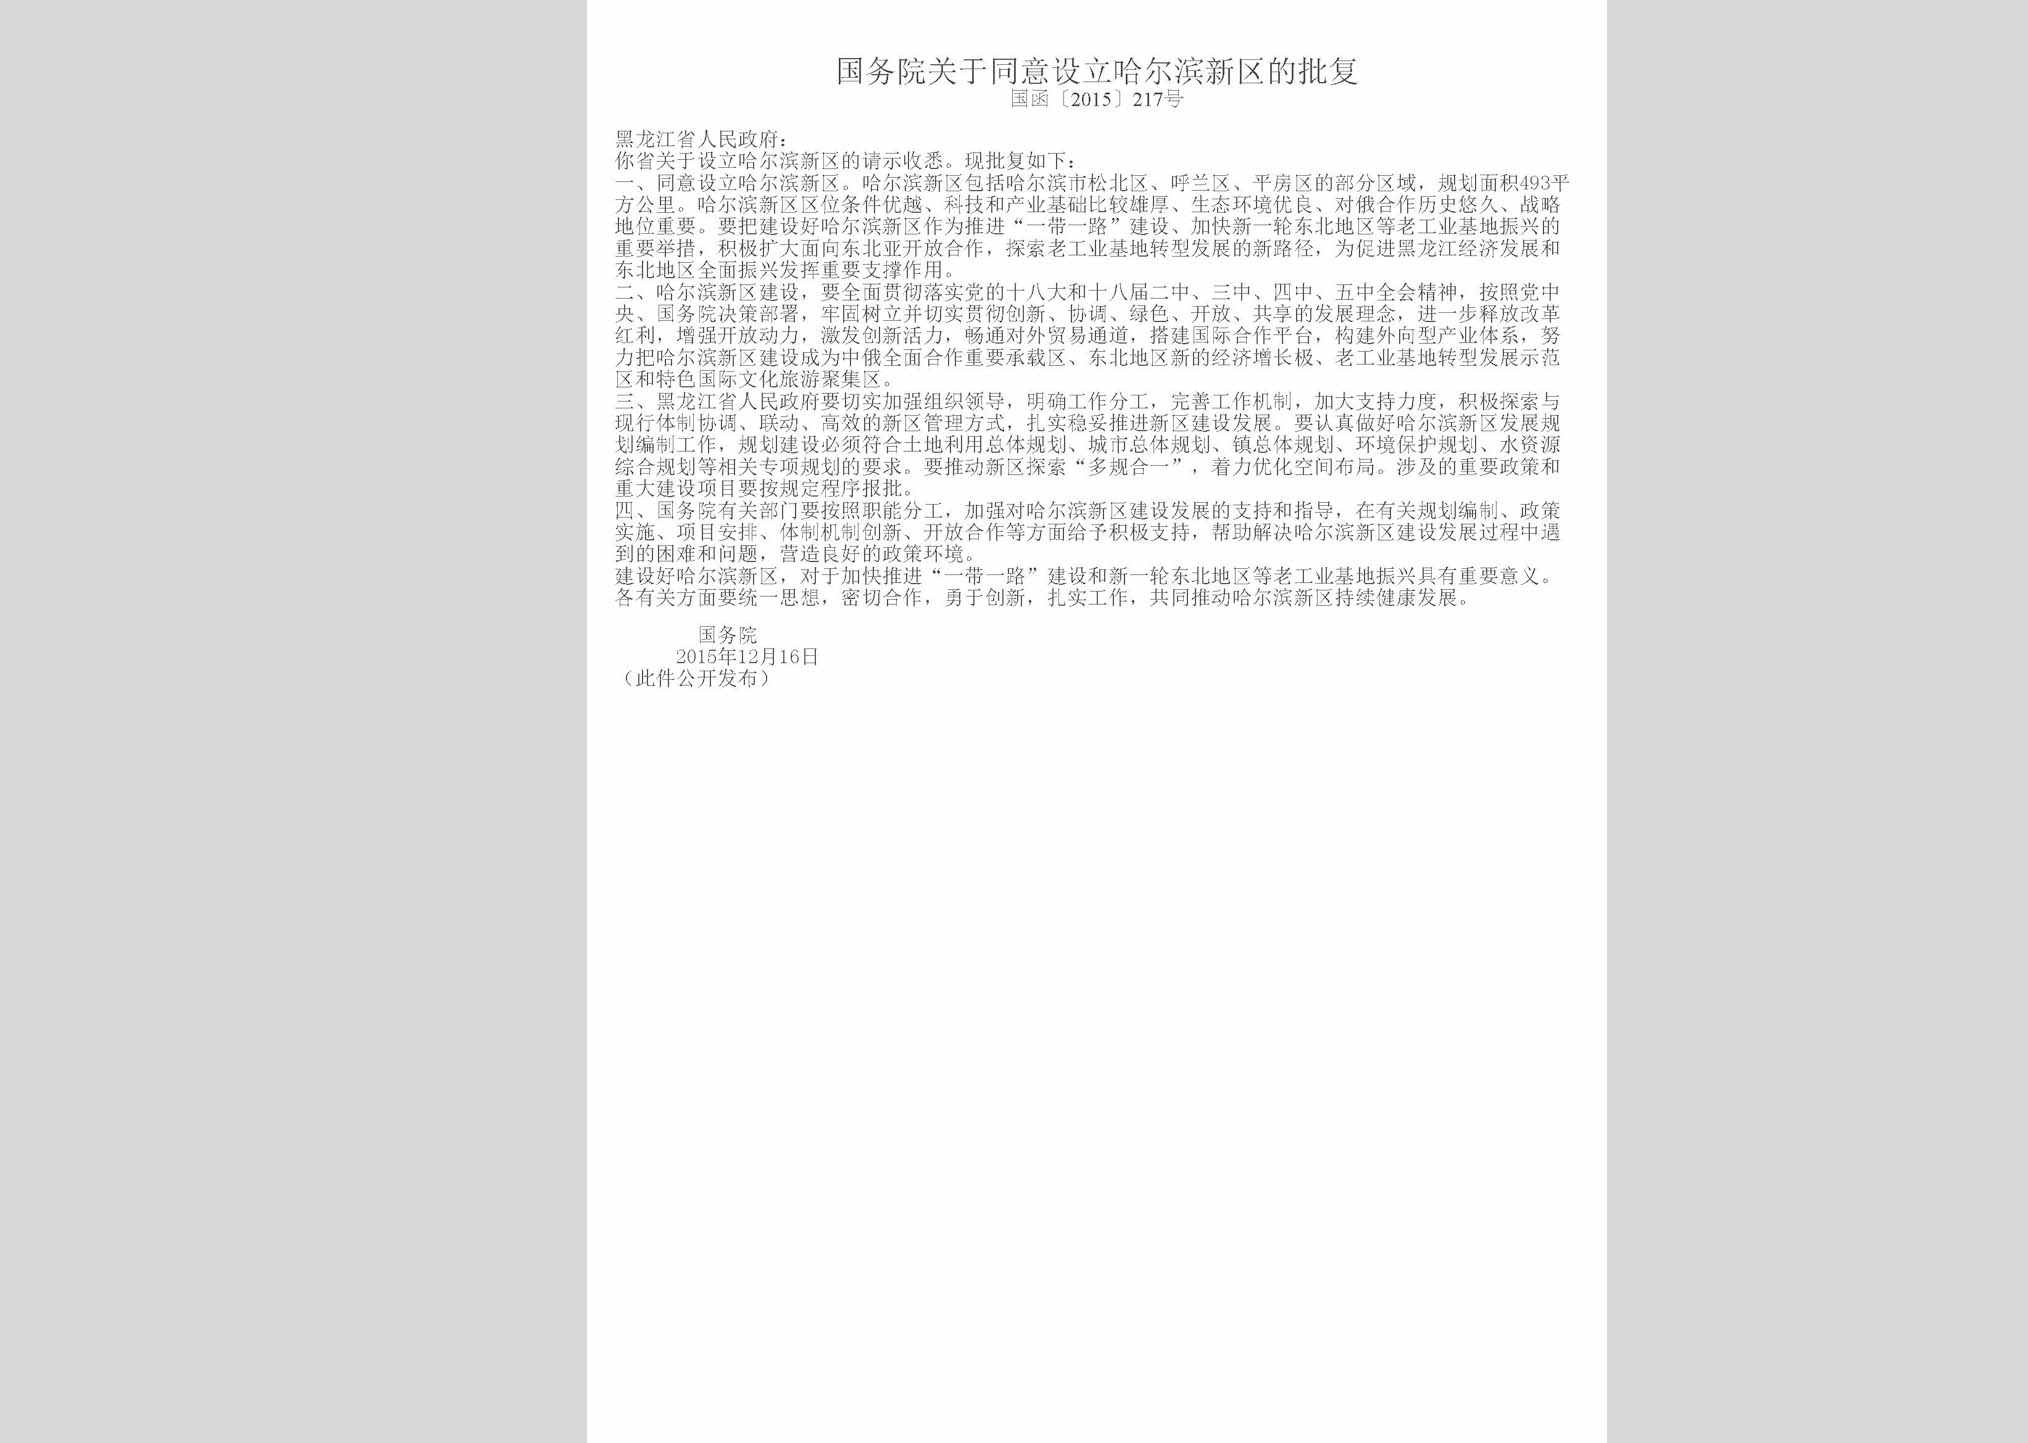 国函[2015]217号：国务院关于同意设立哈尔滨新区的批复